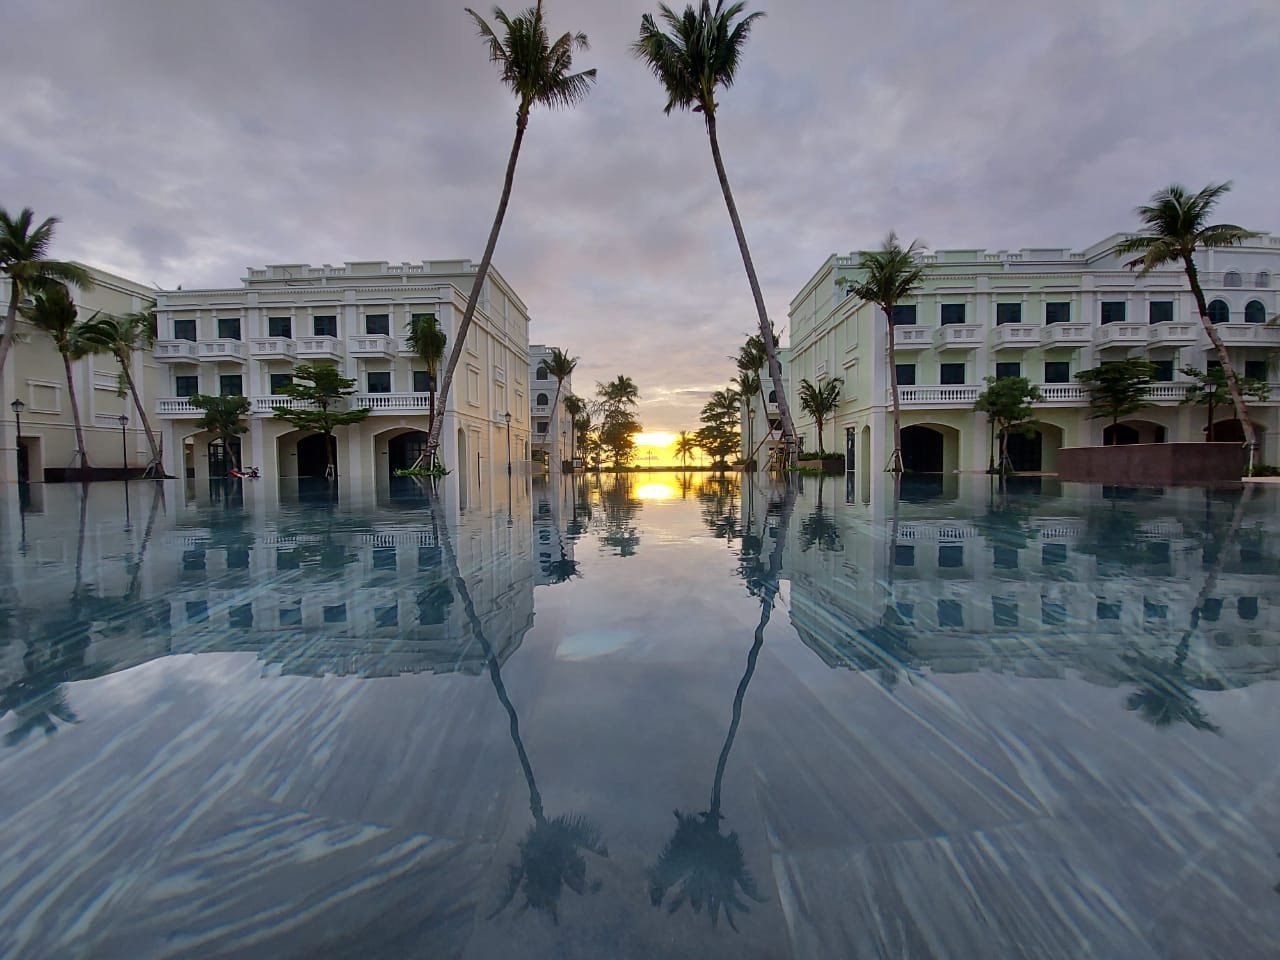 Chiều xuống từ trên tầng 2 bể bơi ngắm hoàng hôn “huyền thoại” của Phú Quốc…